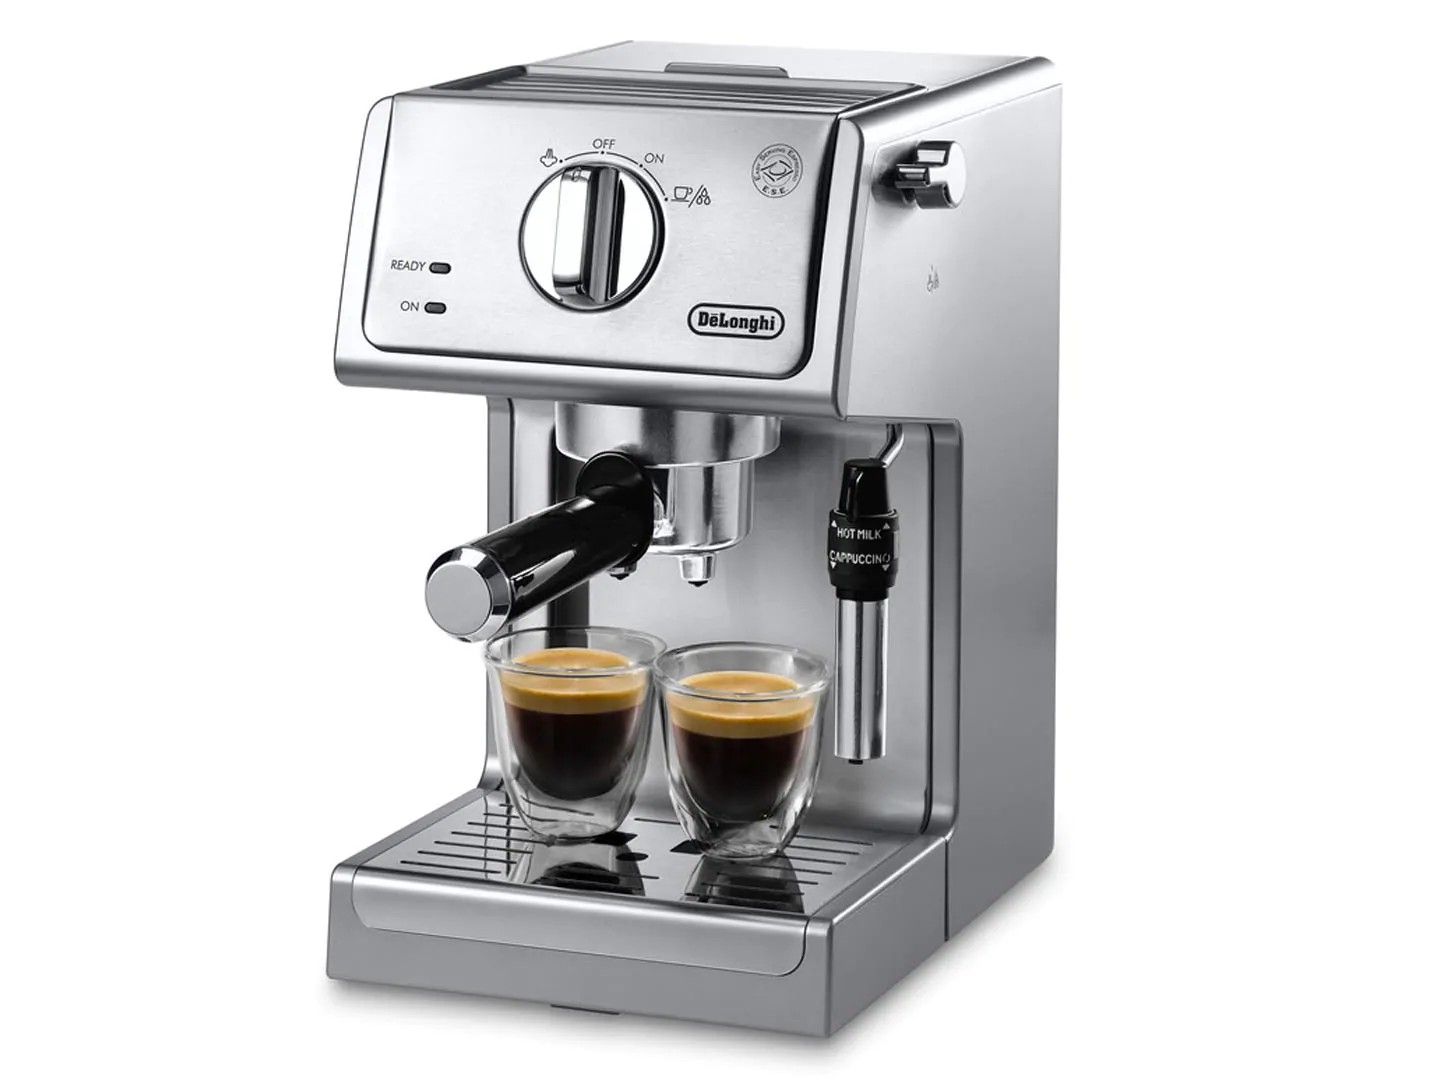 DeLonghi Espresso and Cappuccino machine. Brand new in a box. ECP3630